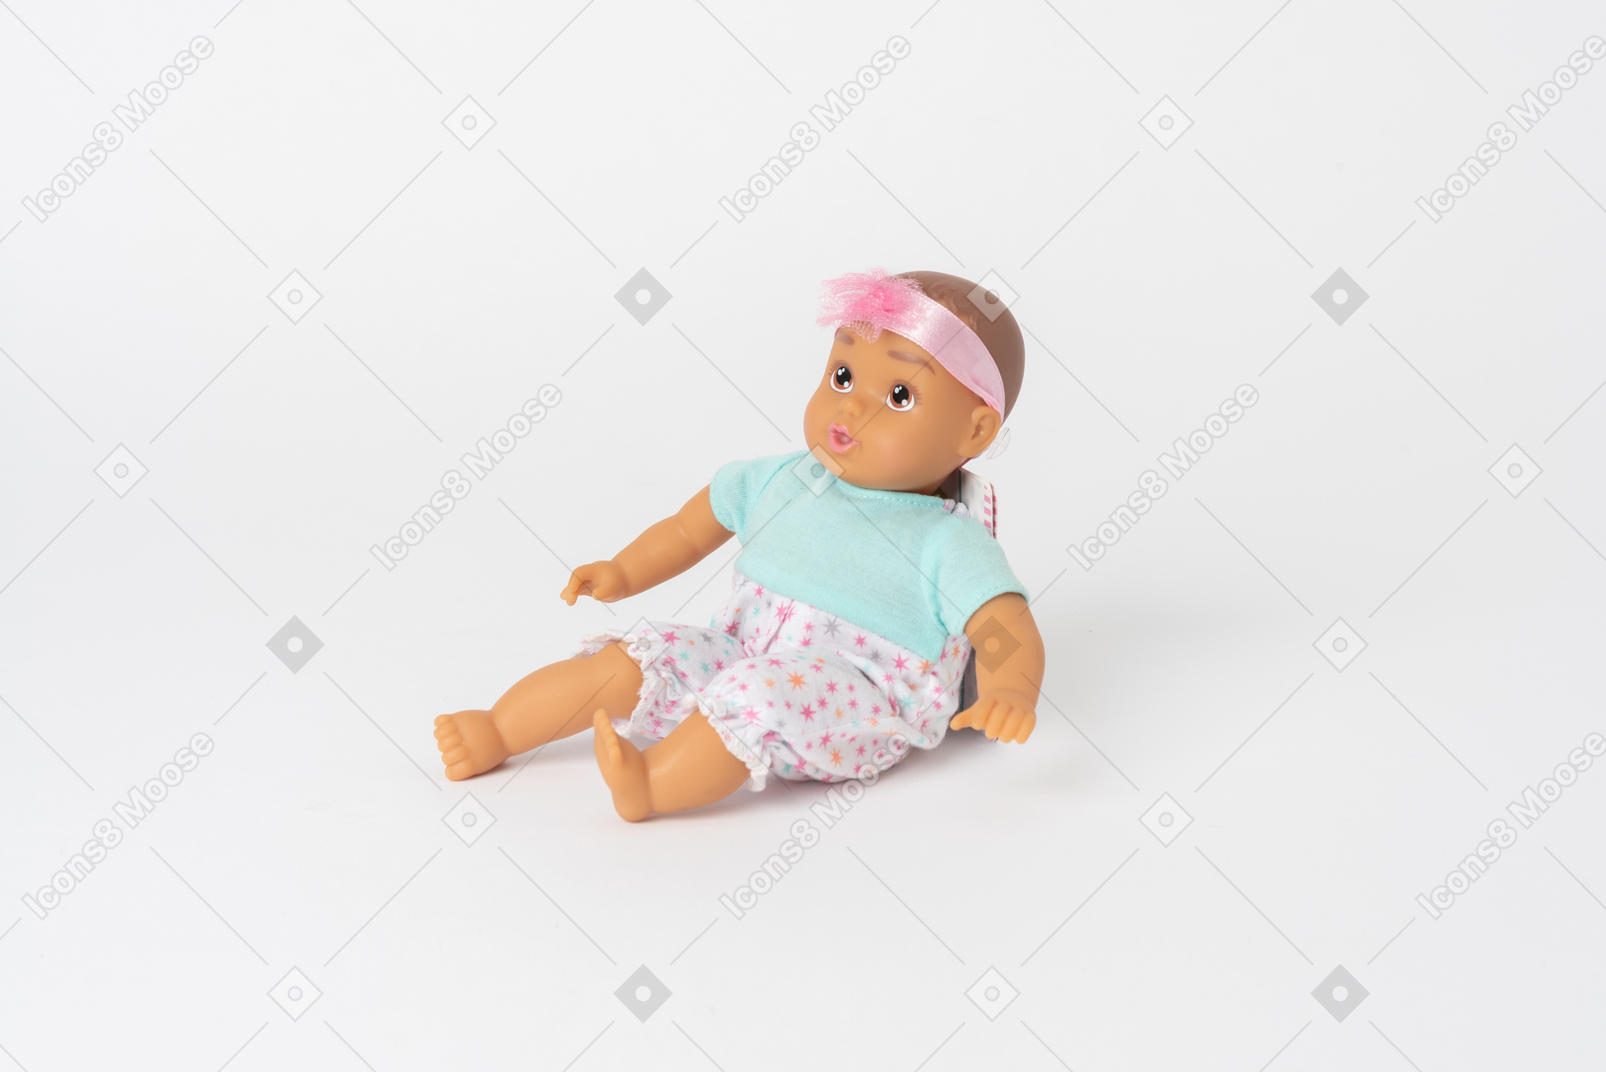 평범한 흰색 배경에 고립 된 귀여운 아기 인형 앉아